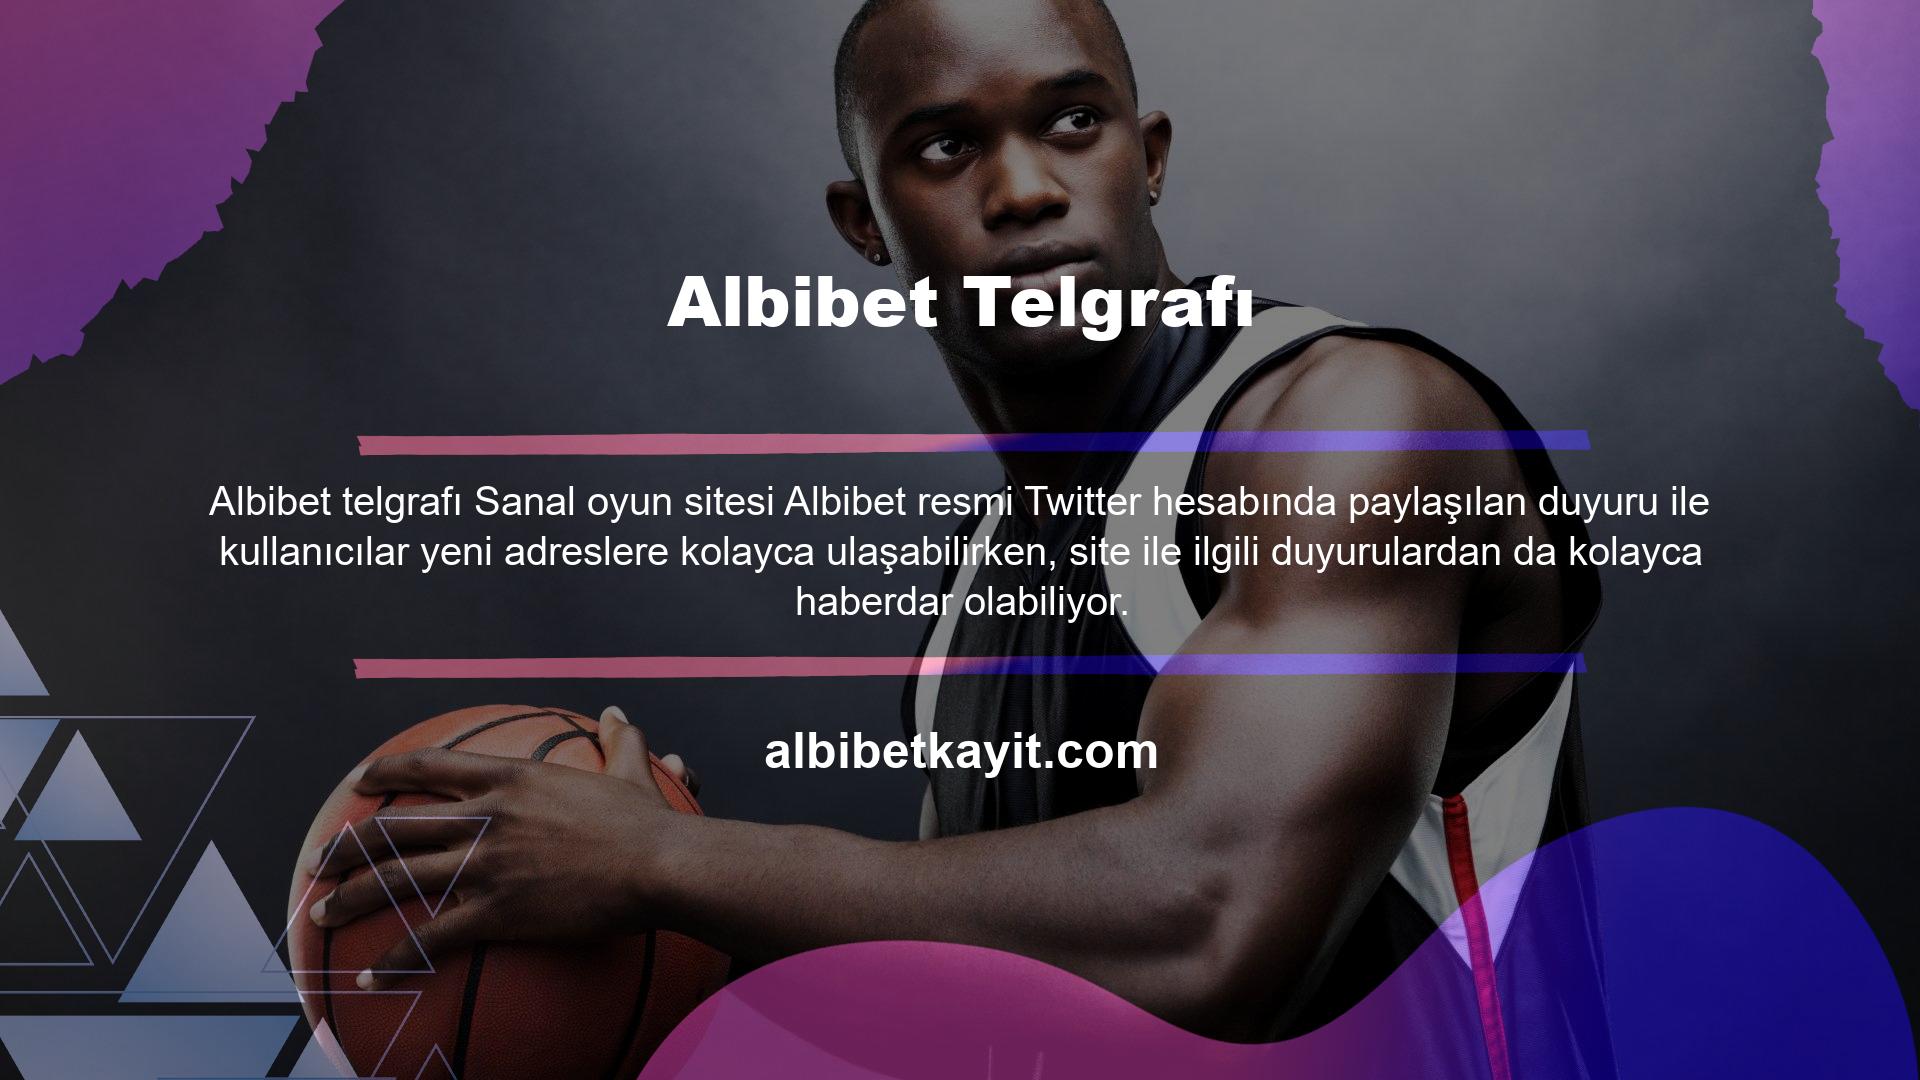 Twitter gibi Albibet Telegram hesabı da kullanıcı üyelerine sunulan bir duyuru hesabıdır